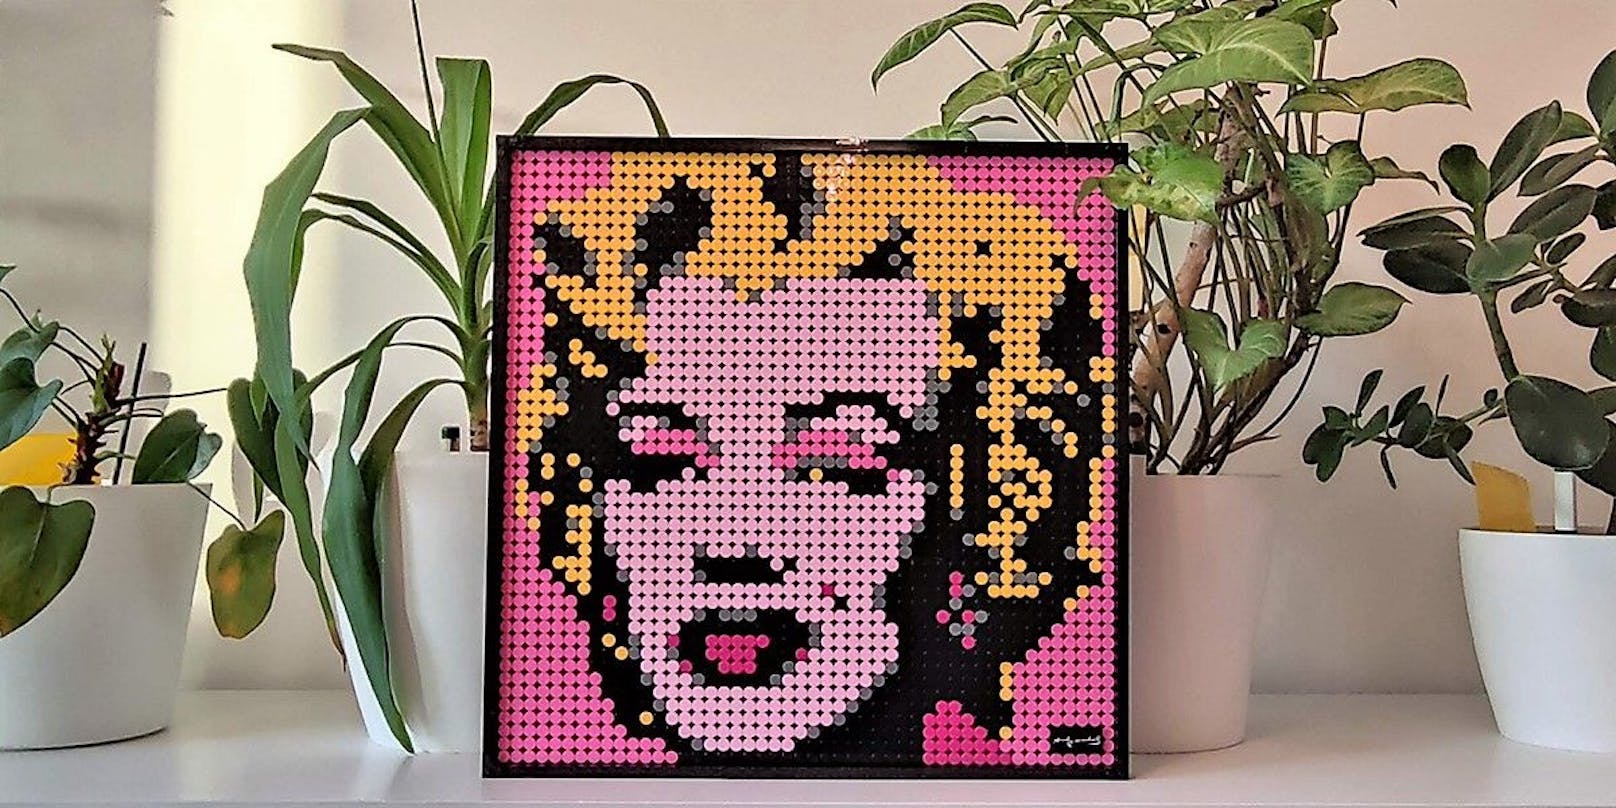 Für erwachsene Fans von Pop-Art und jene, die ein einzigartiges Lego-Bauerlebnis zu schätzen wissen, ist das sehr hochwertige Set Lego Art Andy Warhol's Marilyn Monroe aber ein perfektes Geschenk.